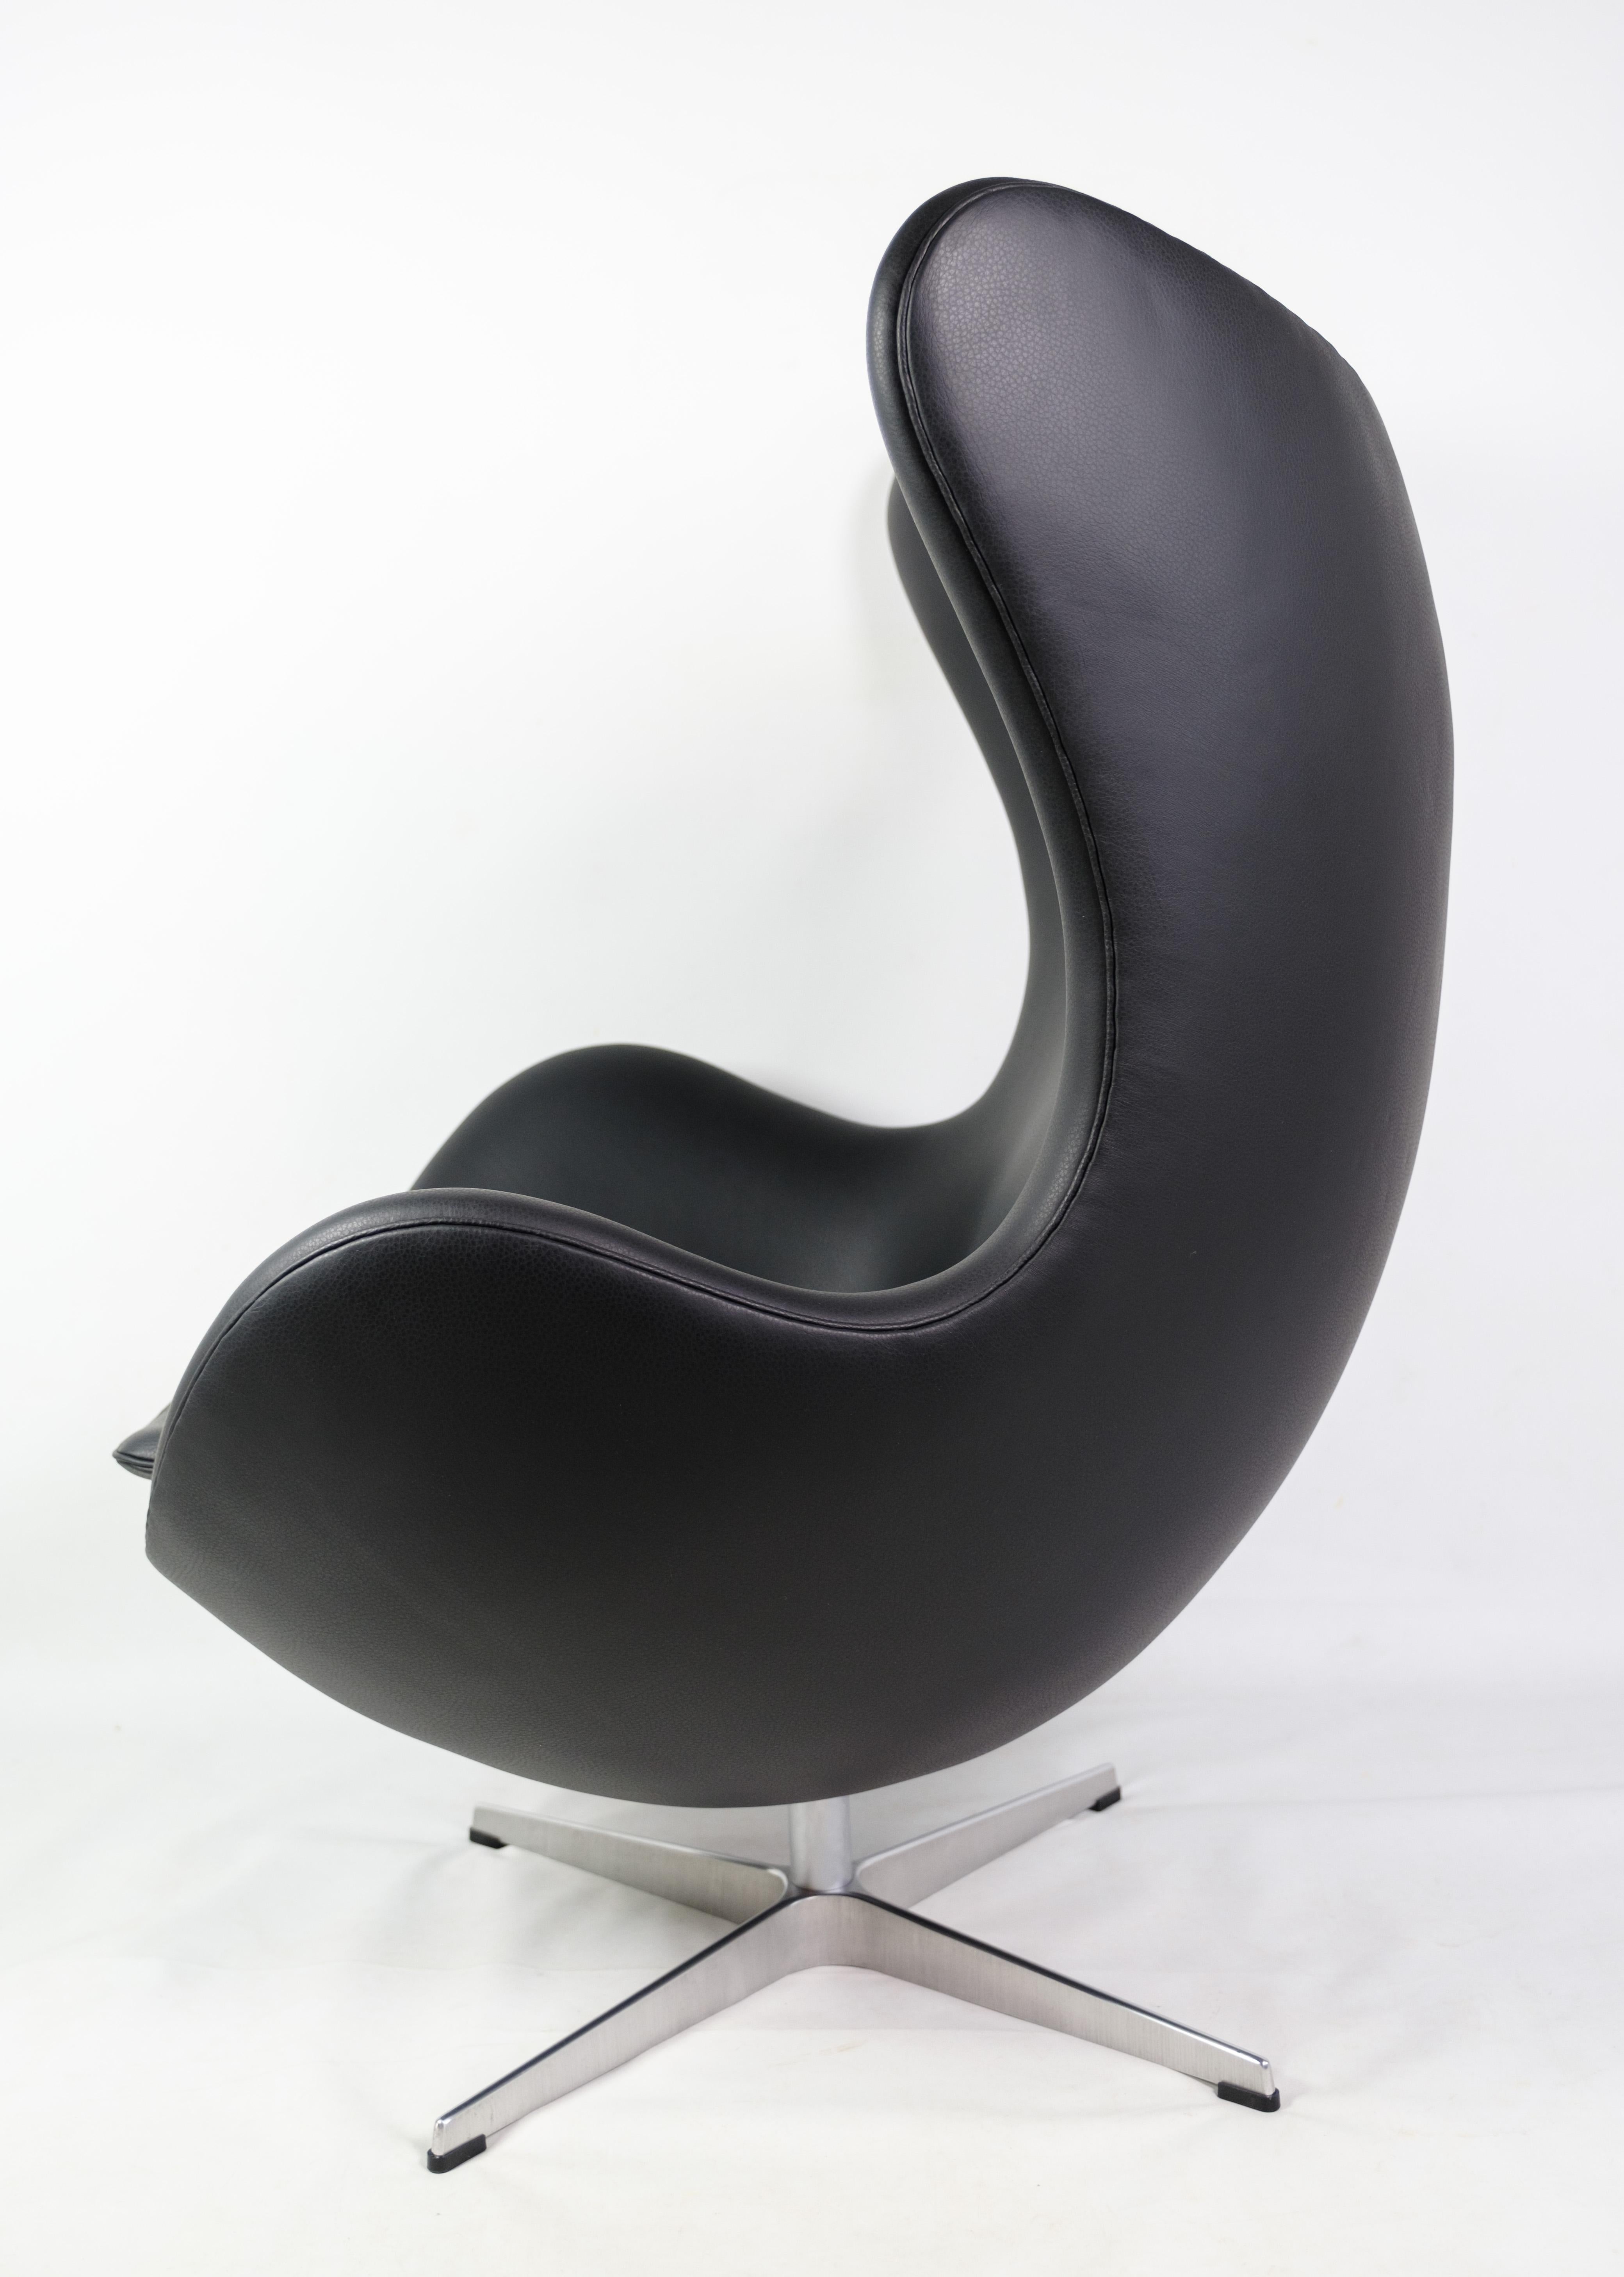 La chaise Egg, modèle 3316, est une chaise de renom conçue par Arne Jacobsen en 1958 et fabriquée par Fritz Hansen. Cette pièce emblématique est célébrée pour sa forme sculpturale et son confort exceptionnel. Conçue à l'origine pour le hall d'entrée